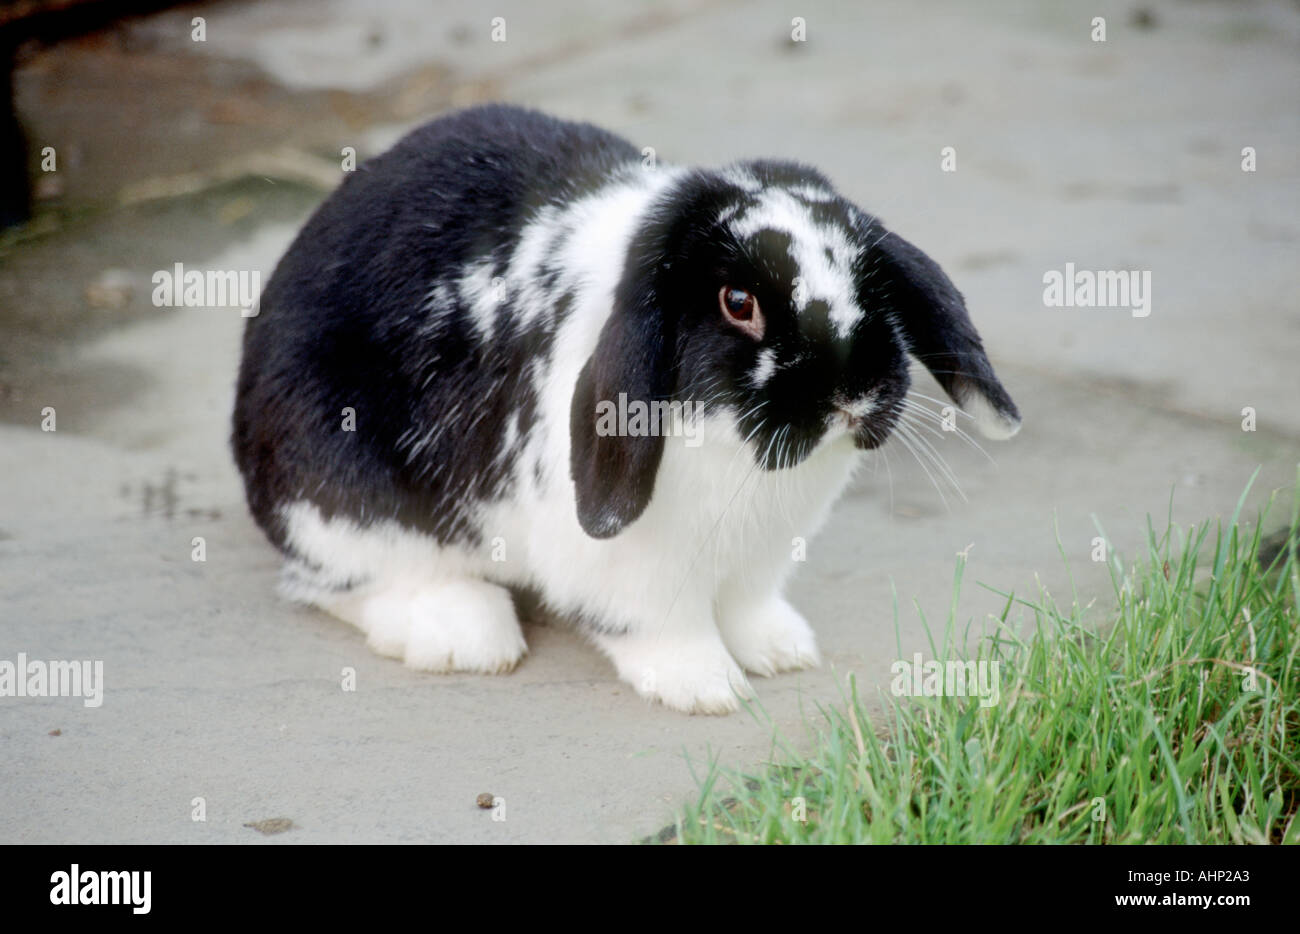 black floppy eared rabbit